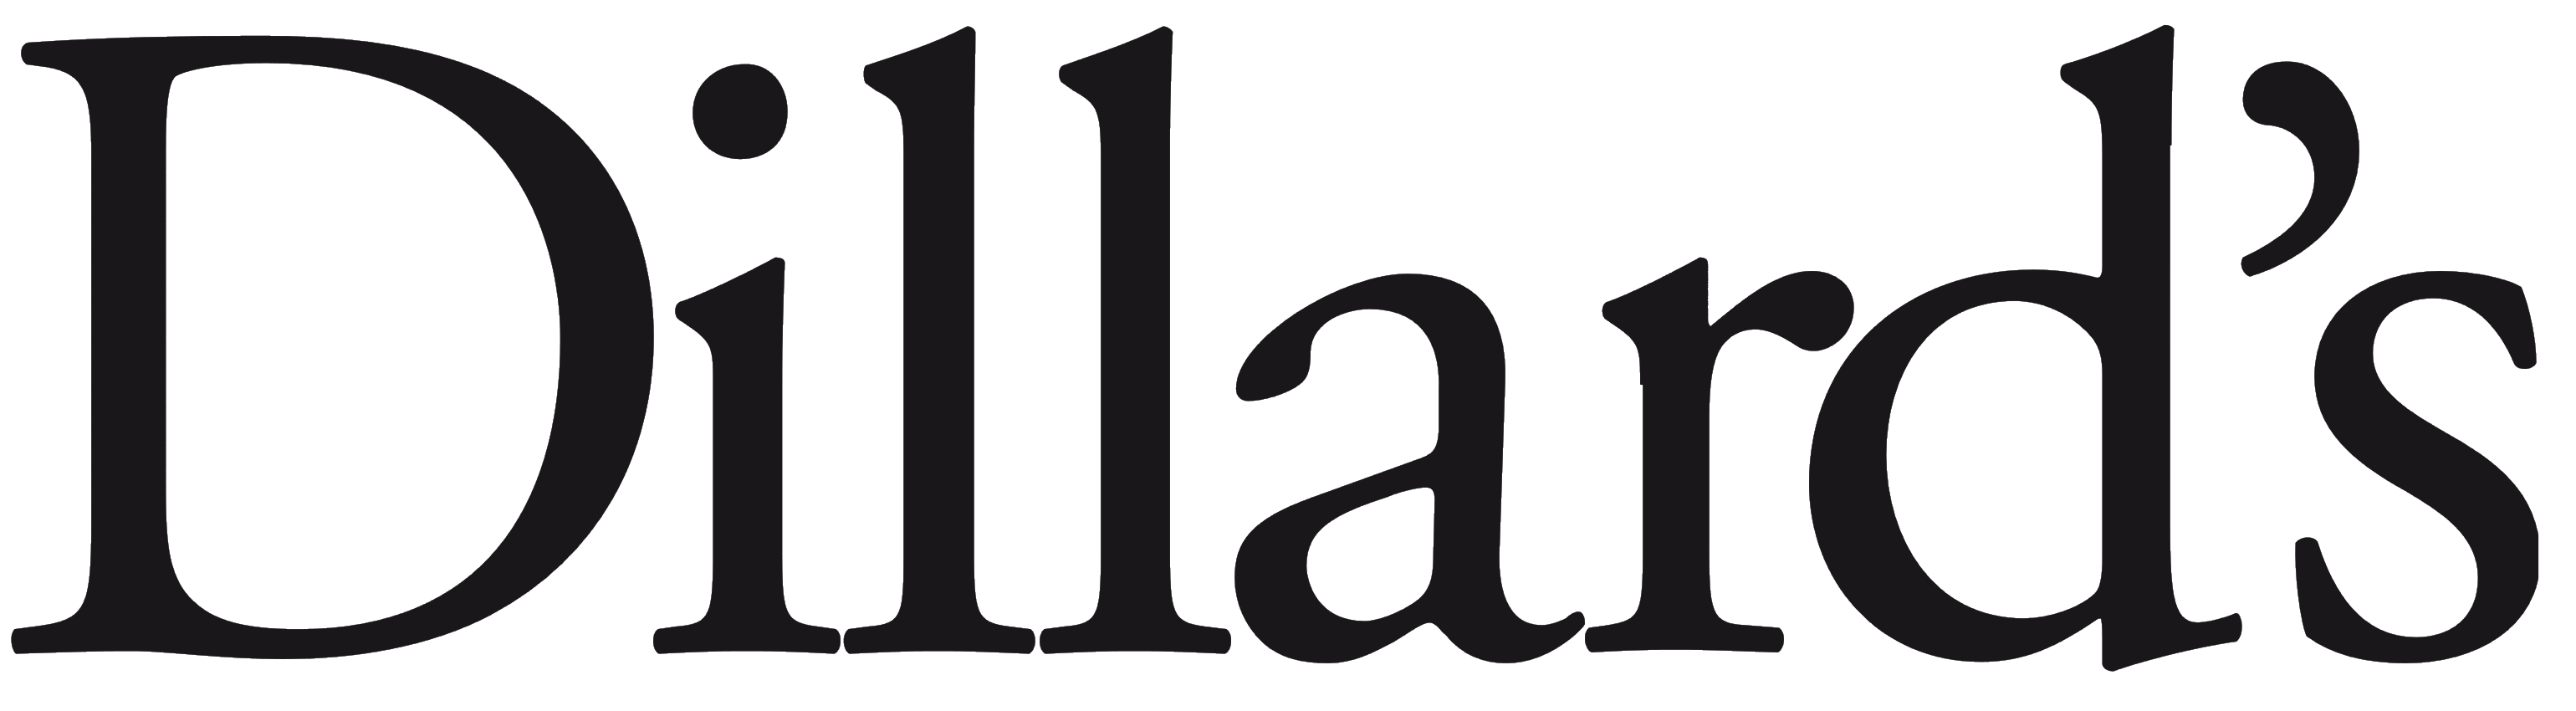 Dillard's logo, logotype